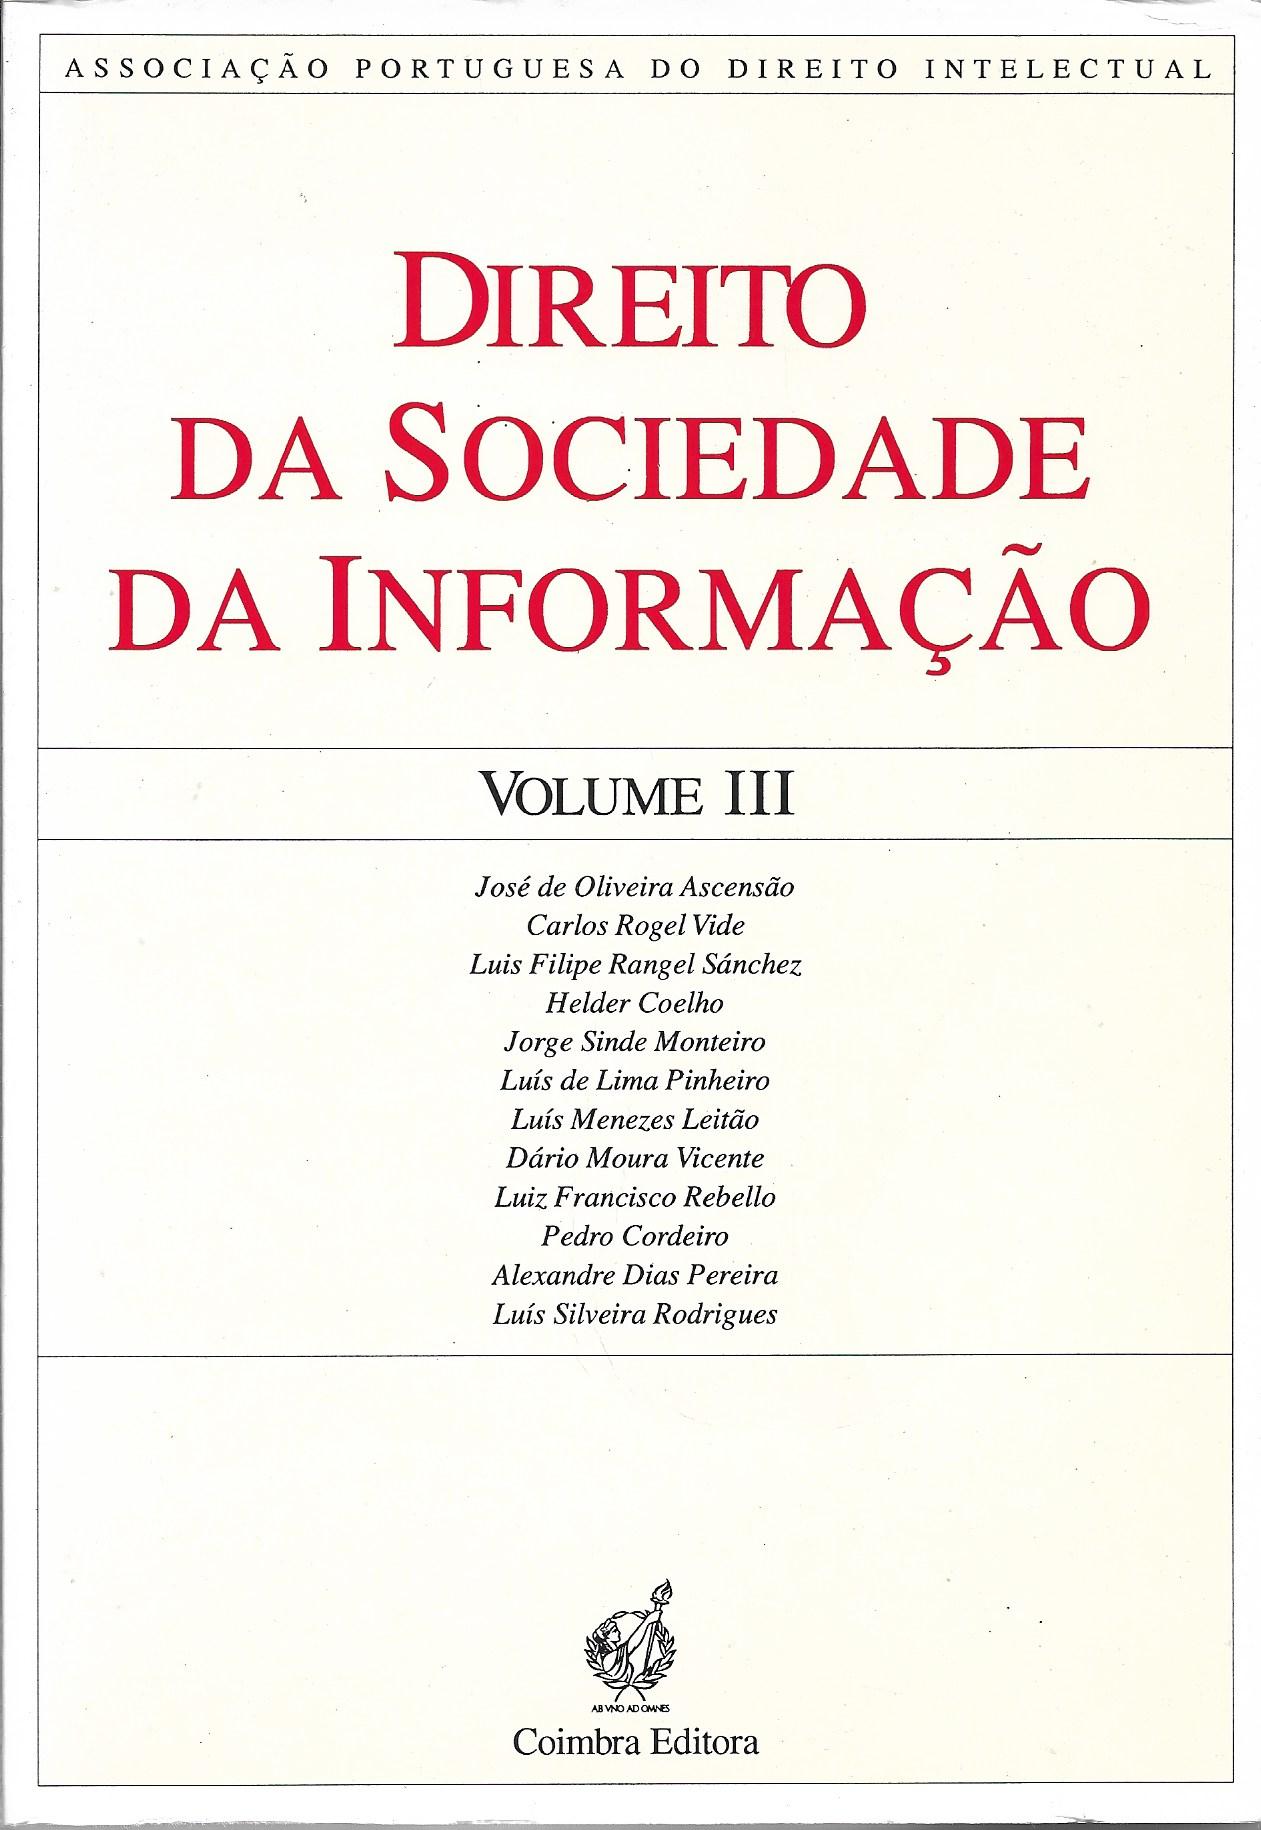  Direito da Sociedade da Informação - VOLUME III